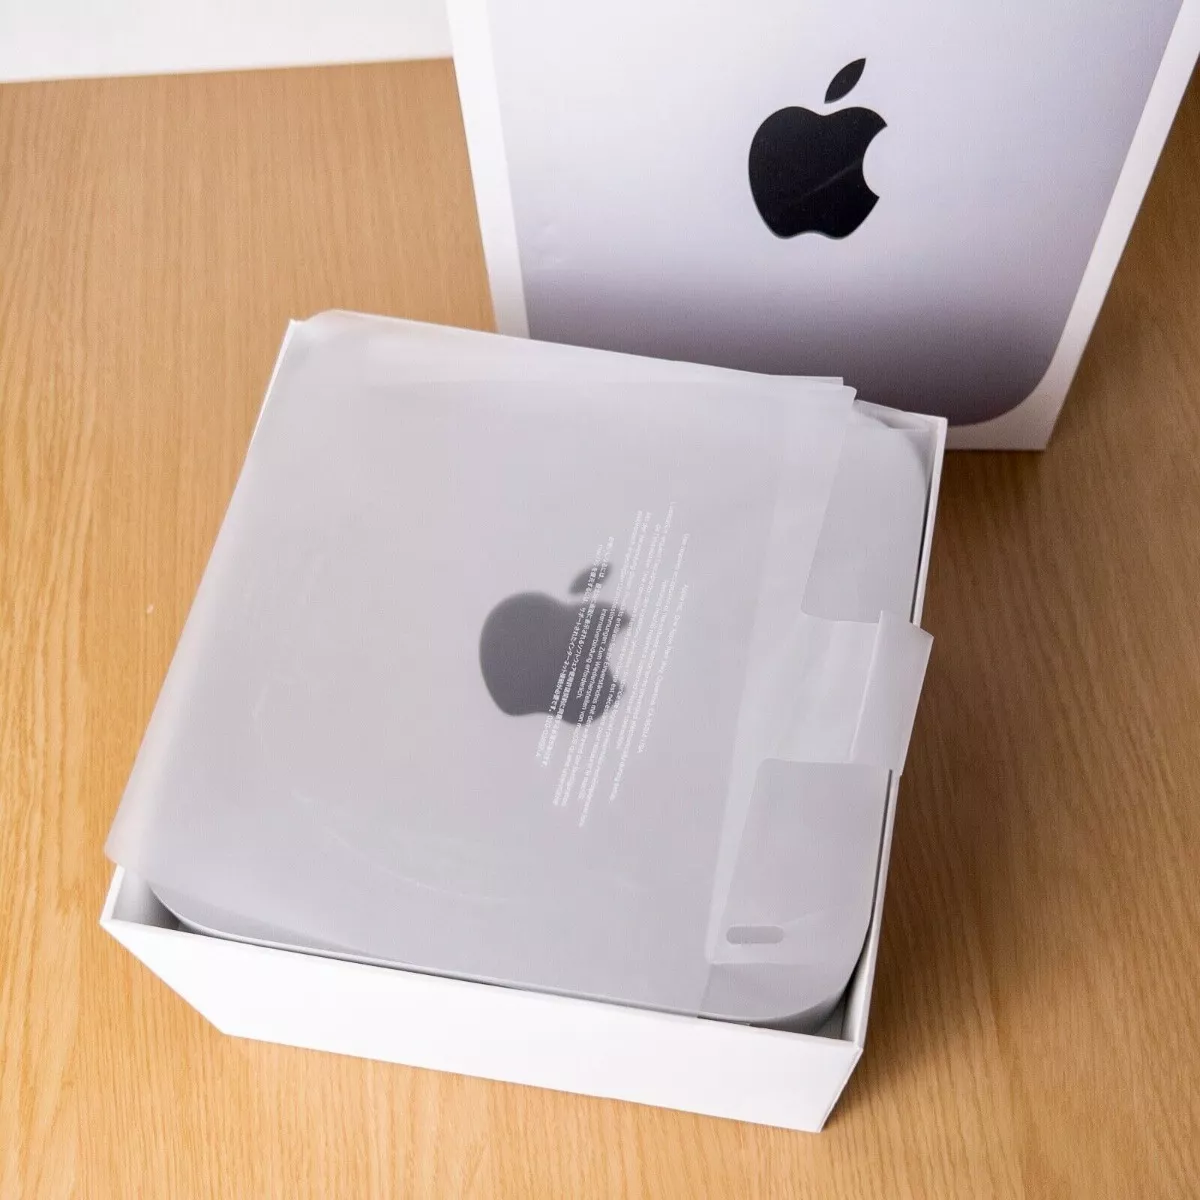 Apple Mac Mini (2020) M1 Chip - 512gb Ssd - 8gb Ram - Silver